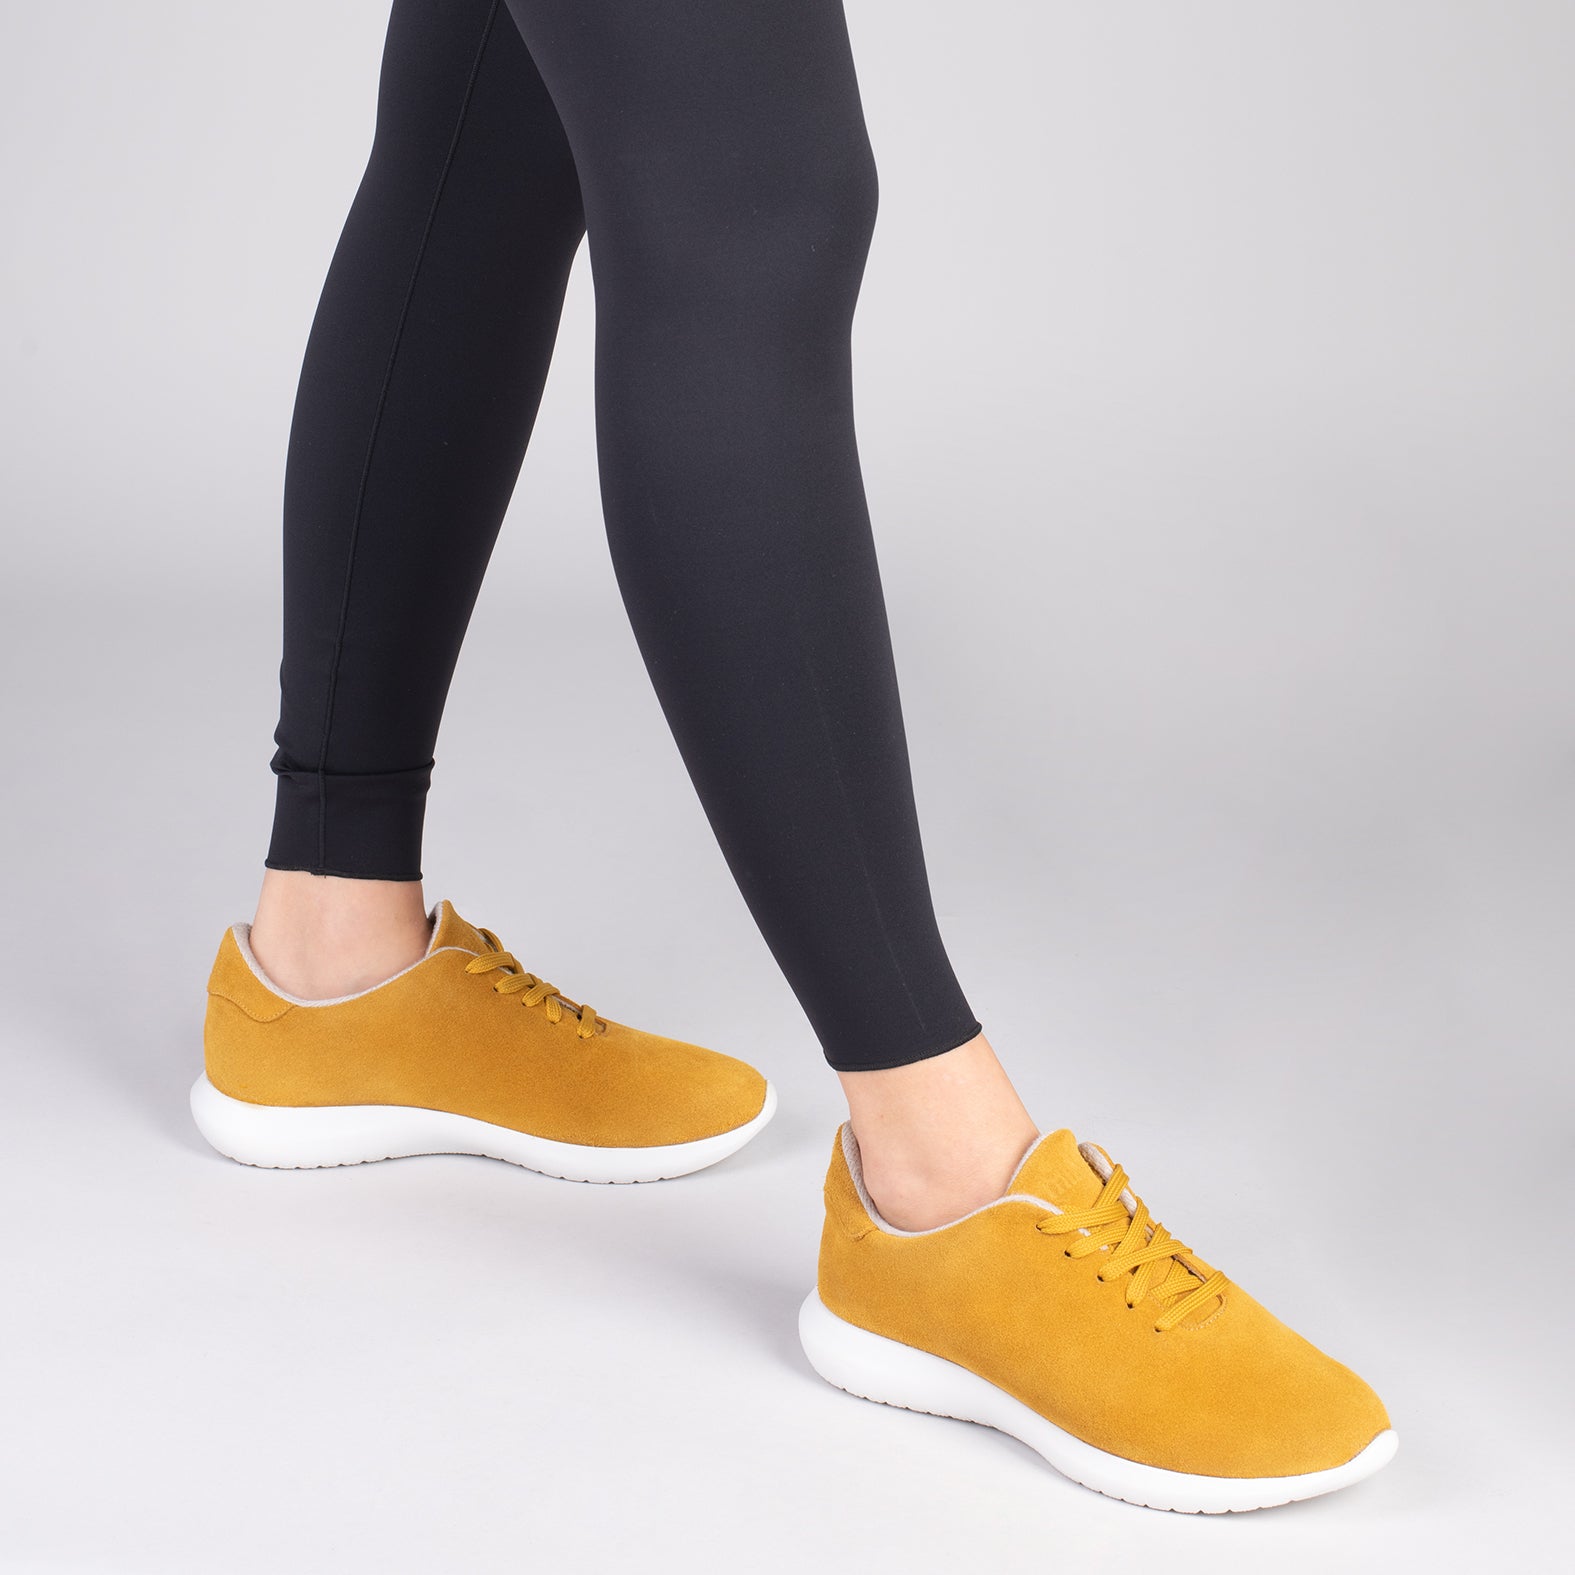 WALK – YELLOW comfortable women’s sneakers